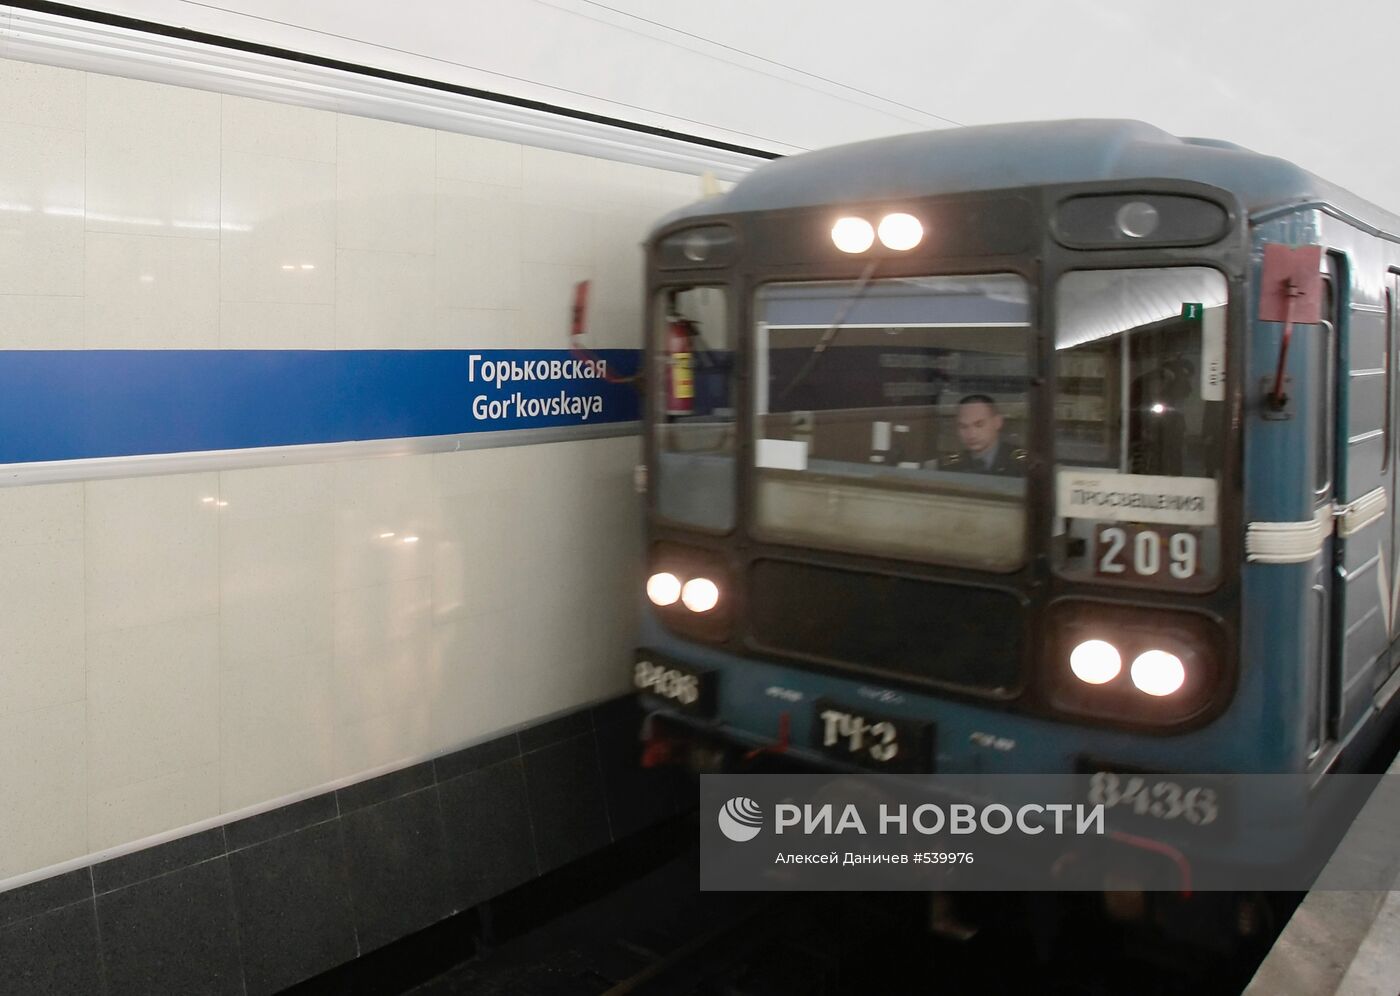 Открытие станции метро "Горьковская" в Санкт-Петербурге